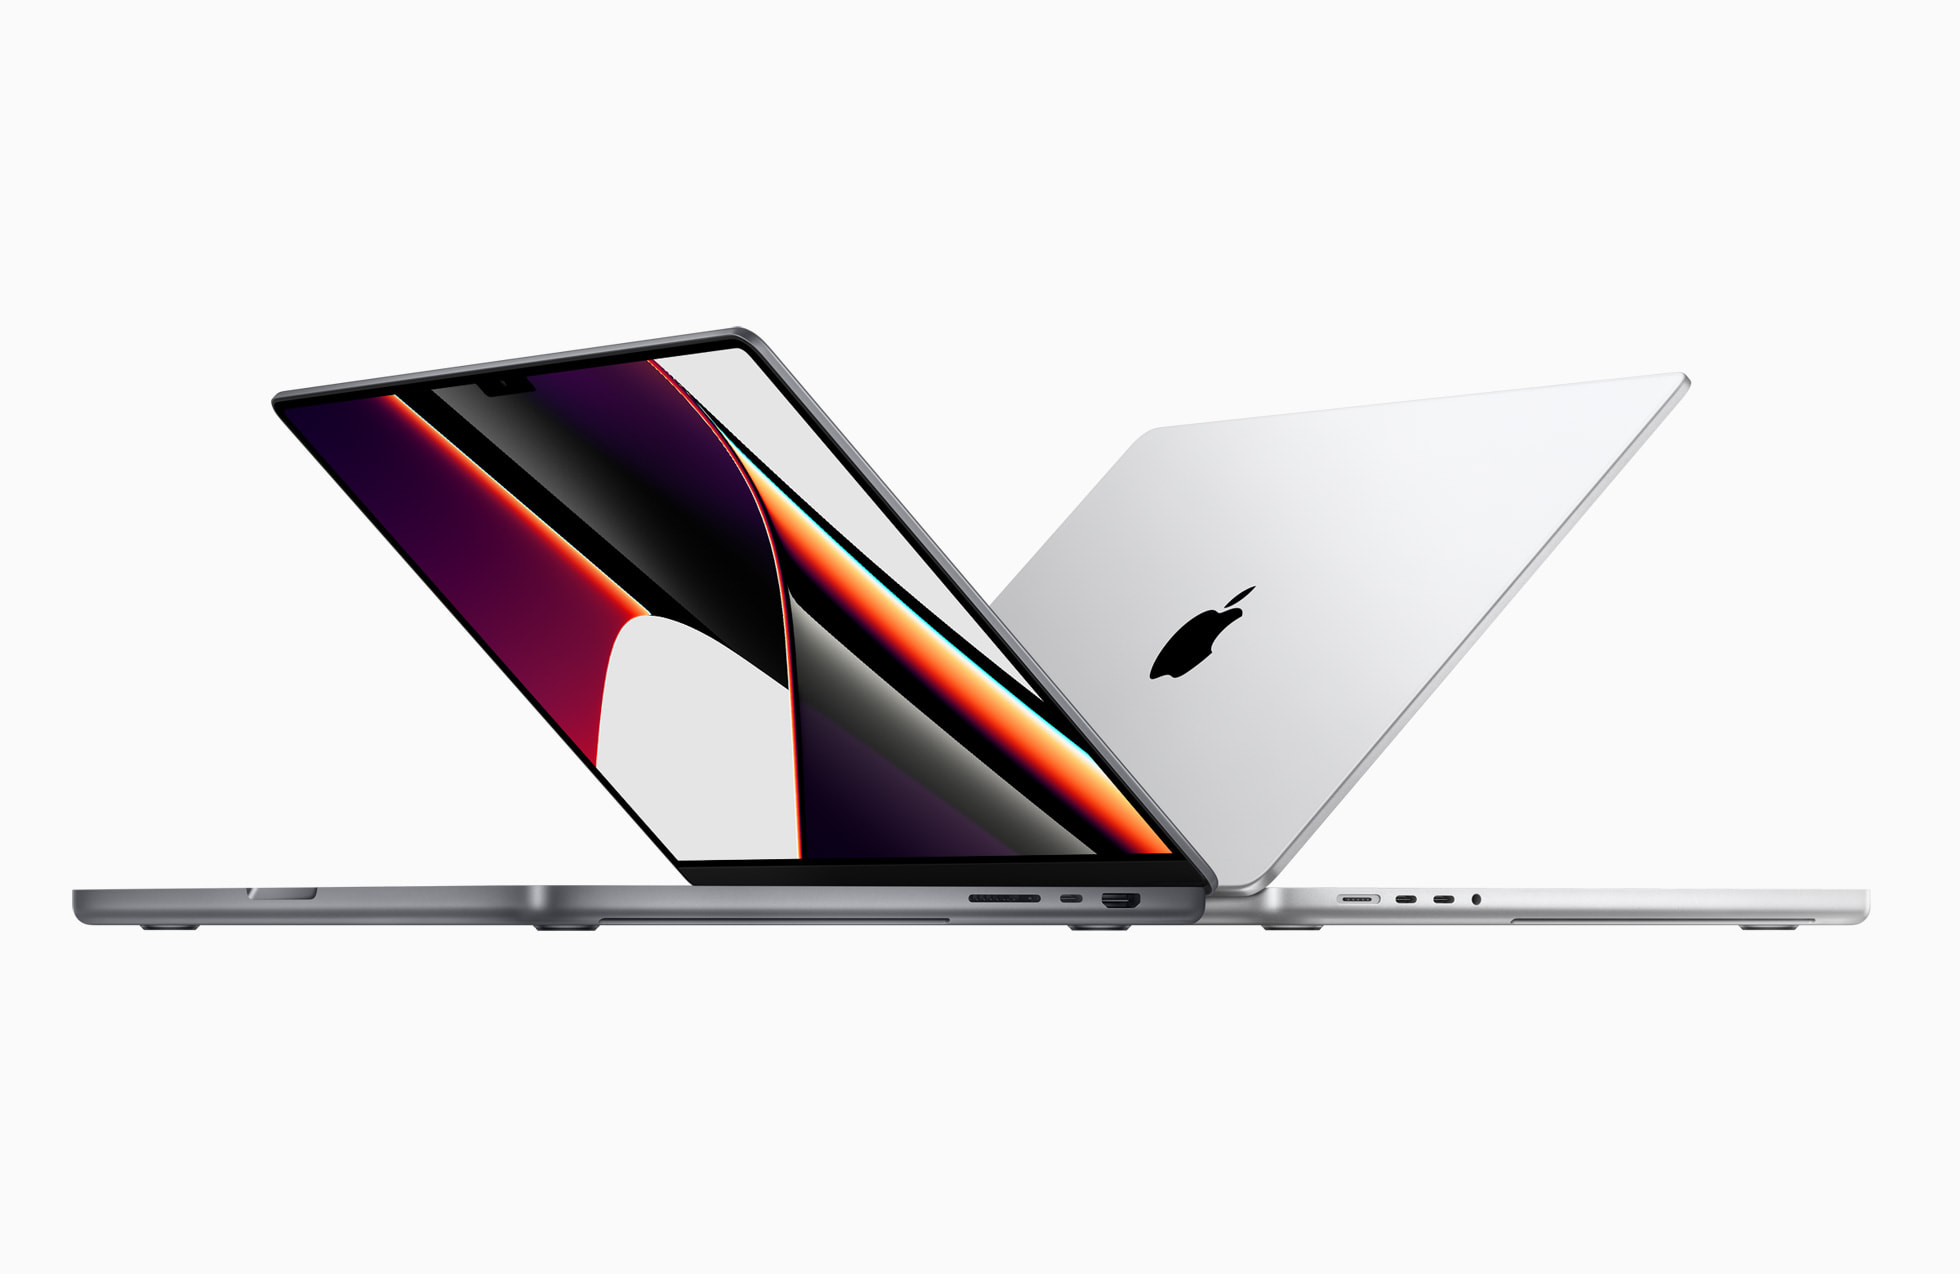 新款MacBook Pro 14/16全球各地价格官网上线 巴西地区最贵 
新款MacBook Pro 14/16全球各地价格官网上线 巴西地区最贵